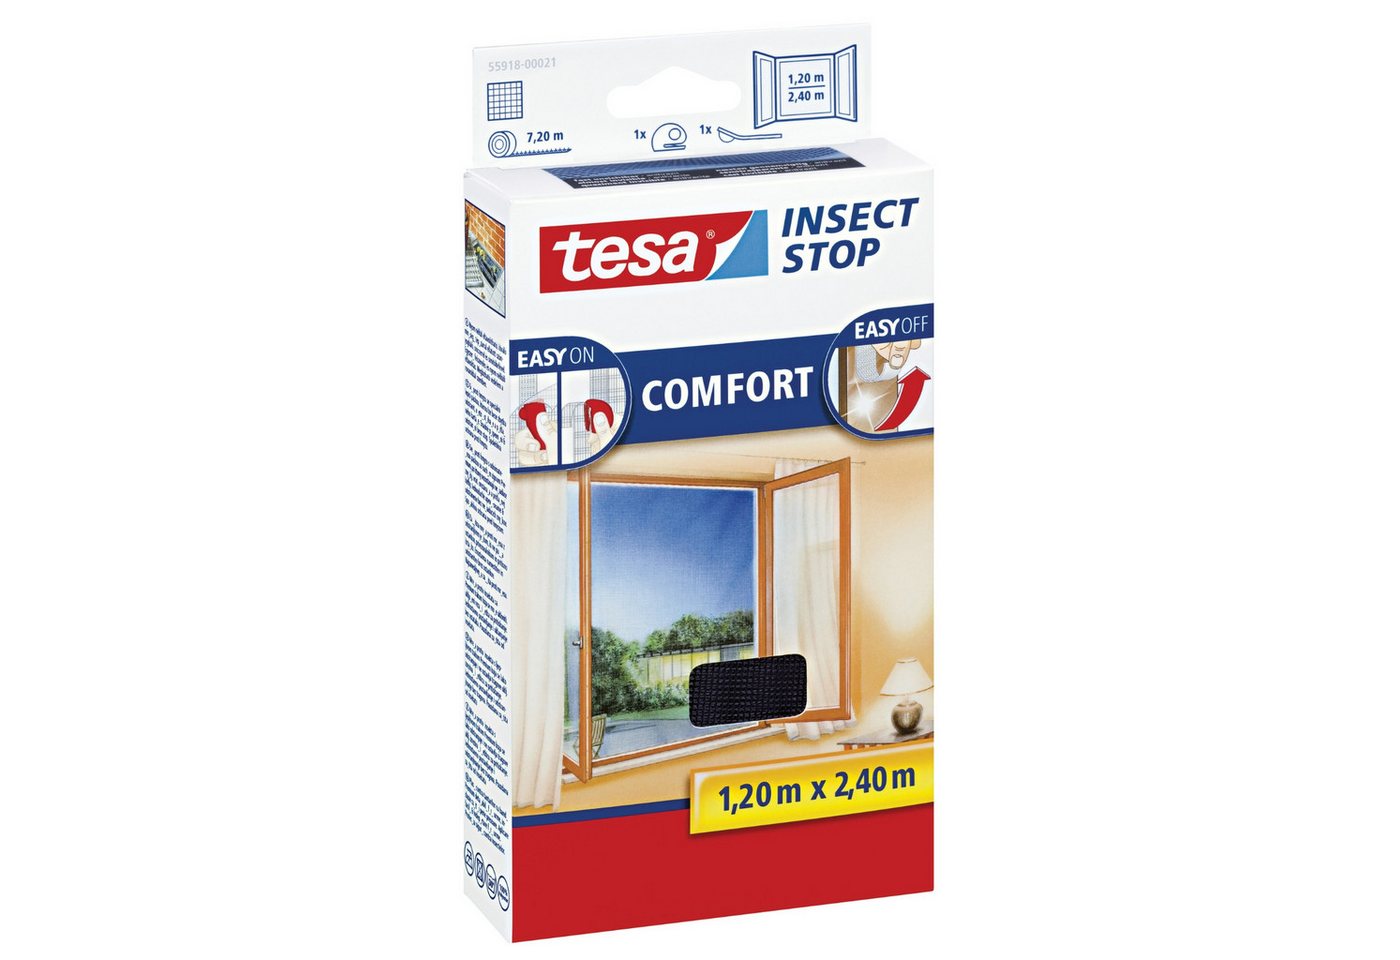 tesa Fliegengitter-Gewebe tesa Fliegengitter Insect Stop COMFORT für Fenster - 1,2 m x 2,4 m - von tesa